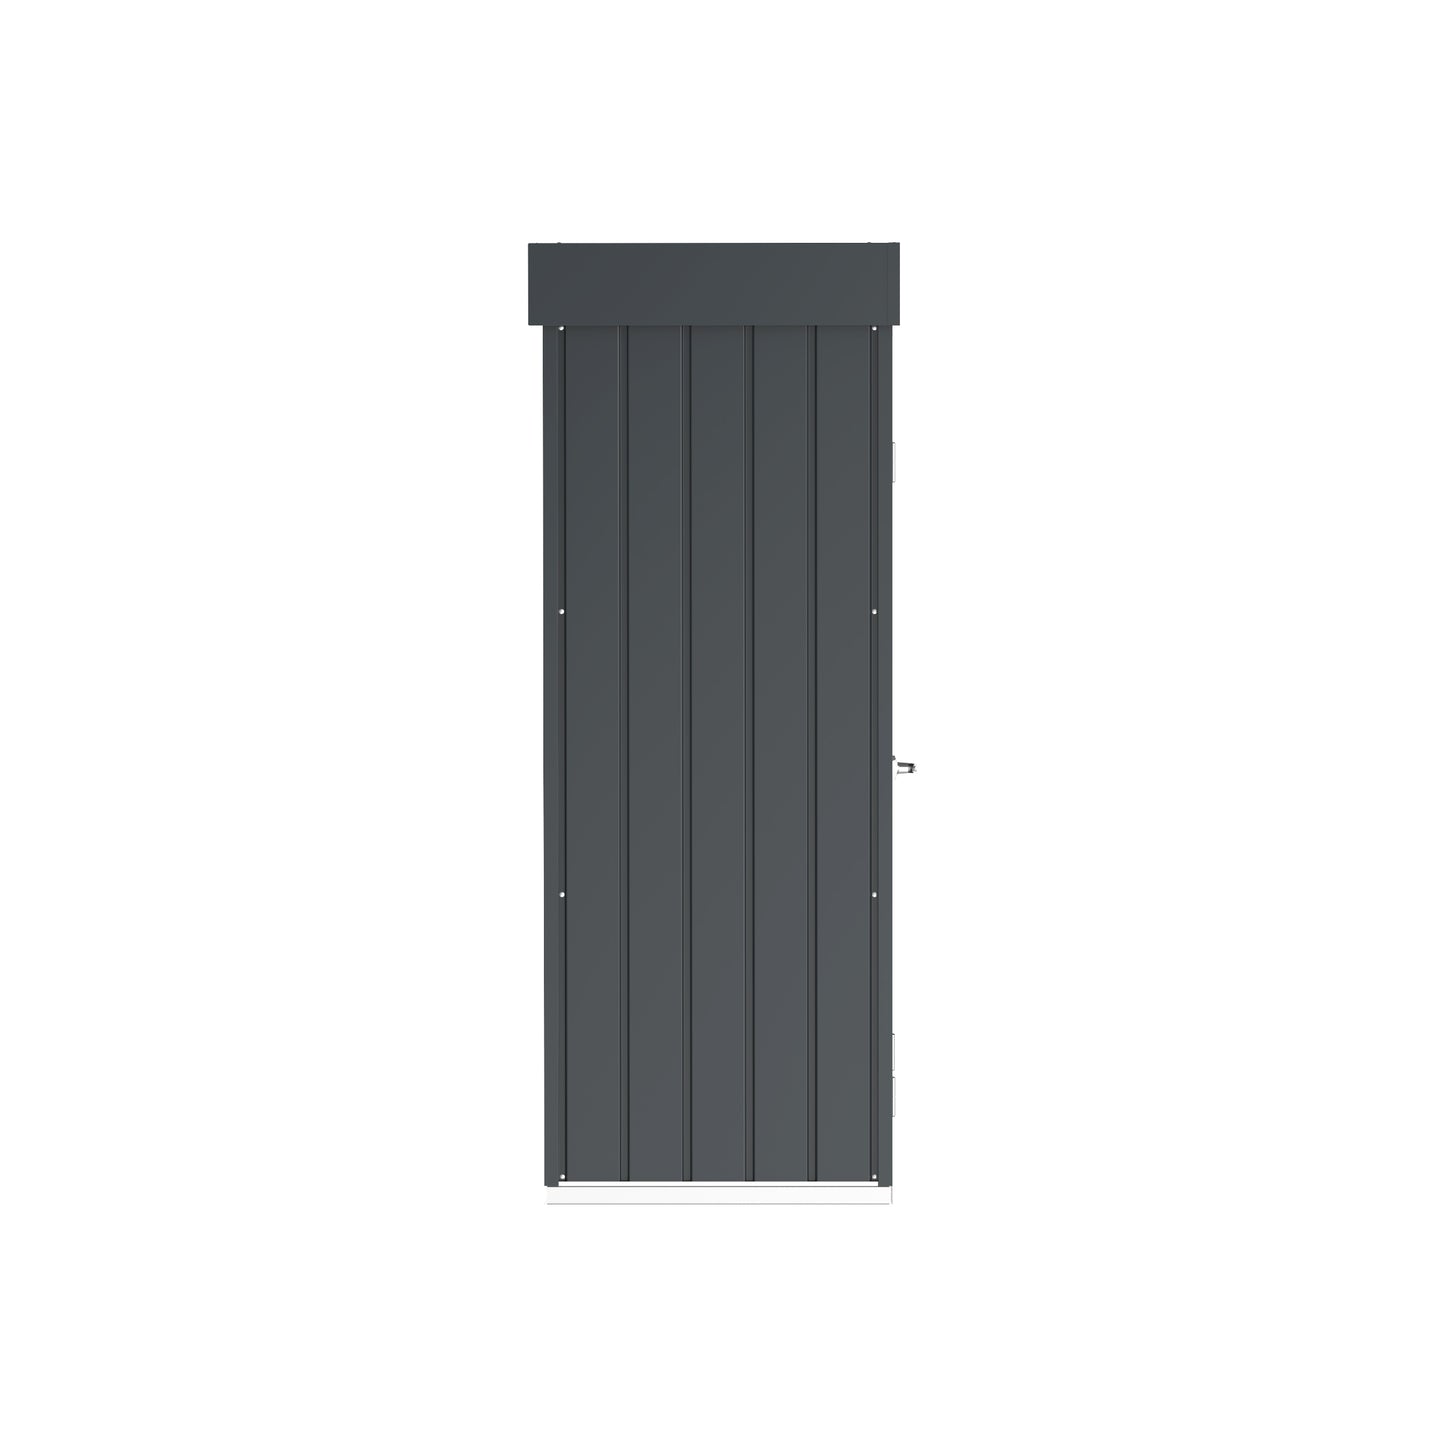 Palladium Steel High Store Lockers with Roof Garden Double Door Cabinets